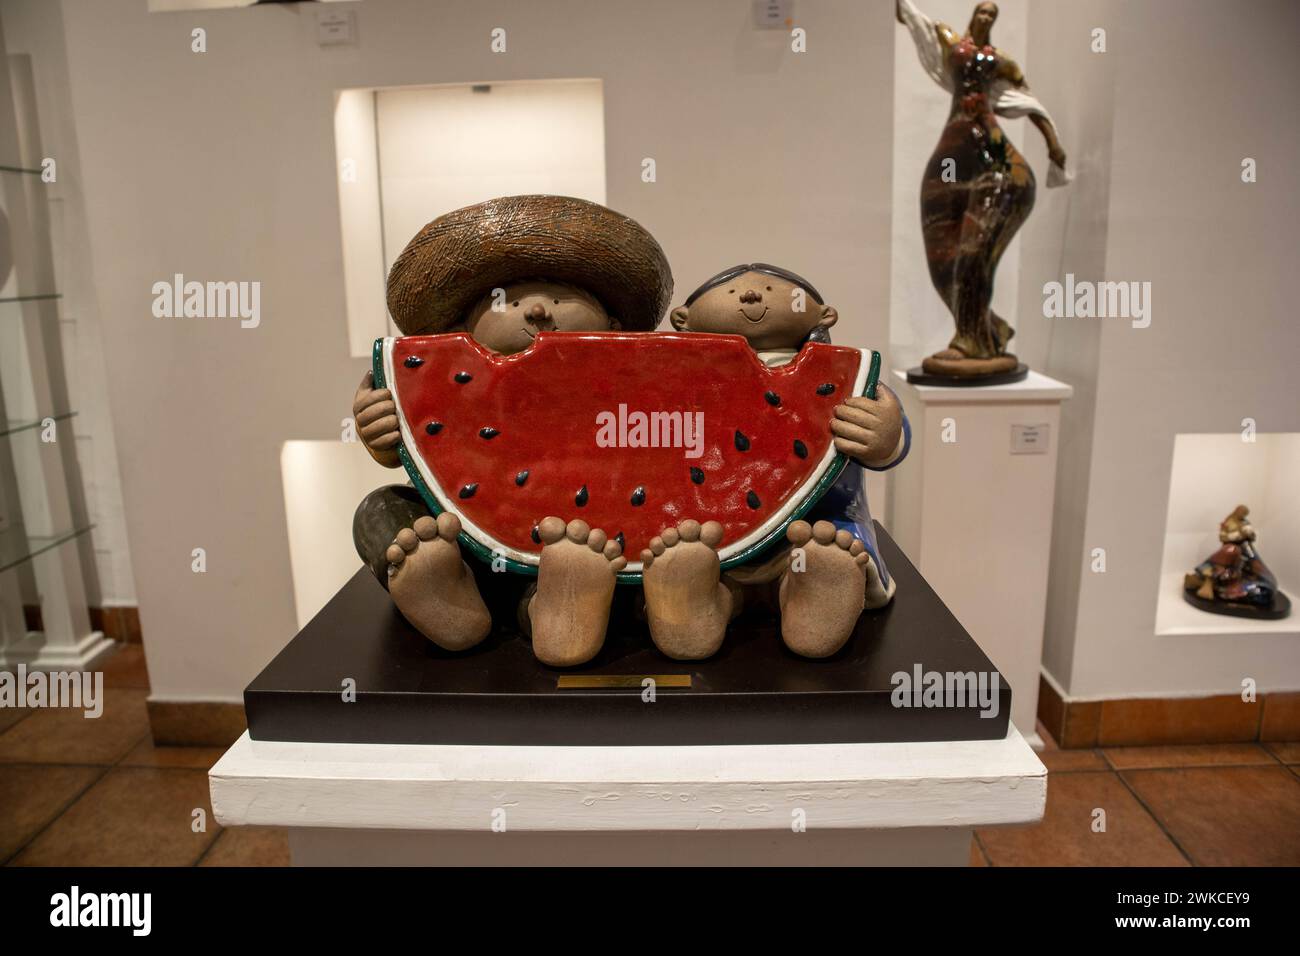 Il s'agit d'une œuvre d'art en céramique dans une galerie d'art mexicaine représentant un couple mexicain mangeant une pastèque. Banque D'Images